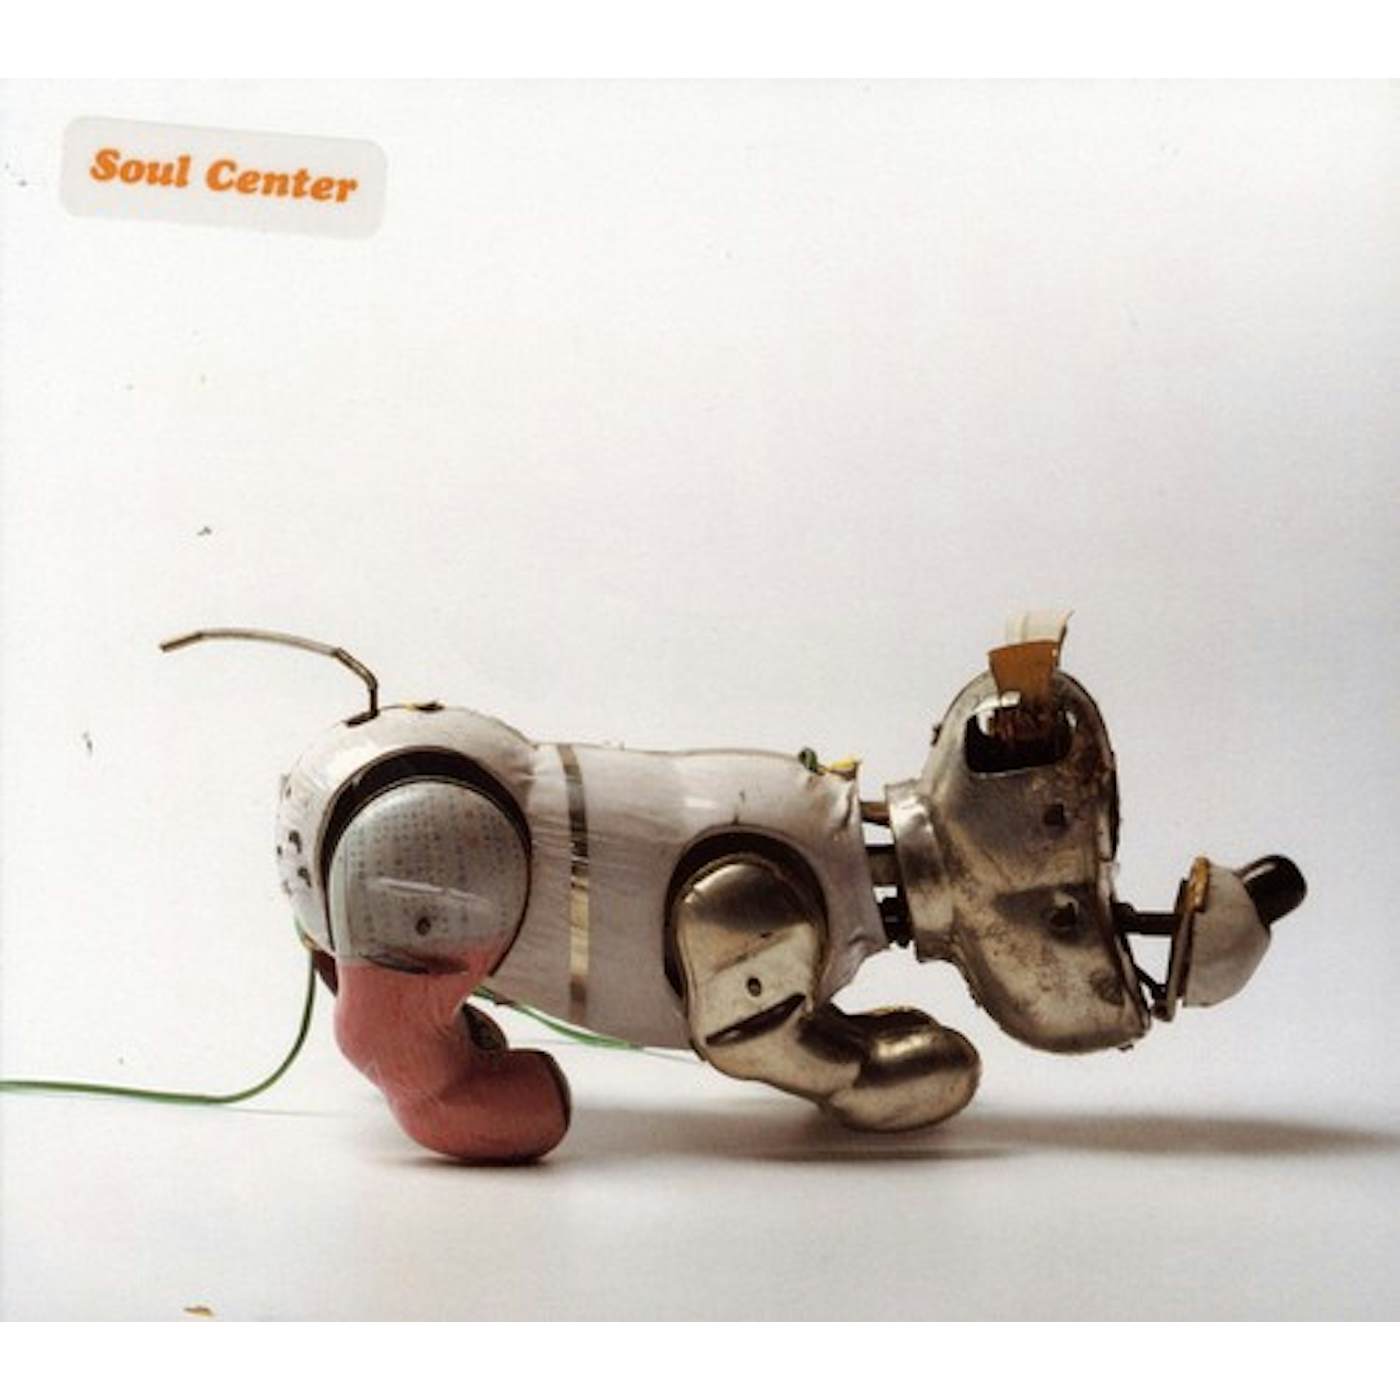 SOUL CENTER III CD